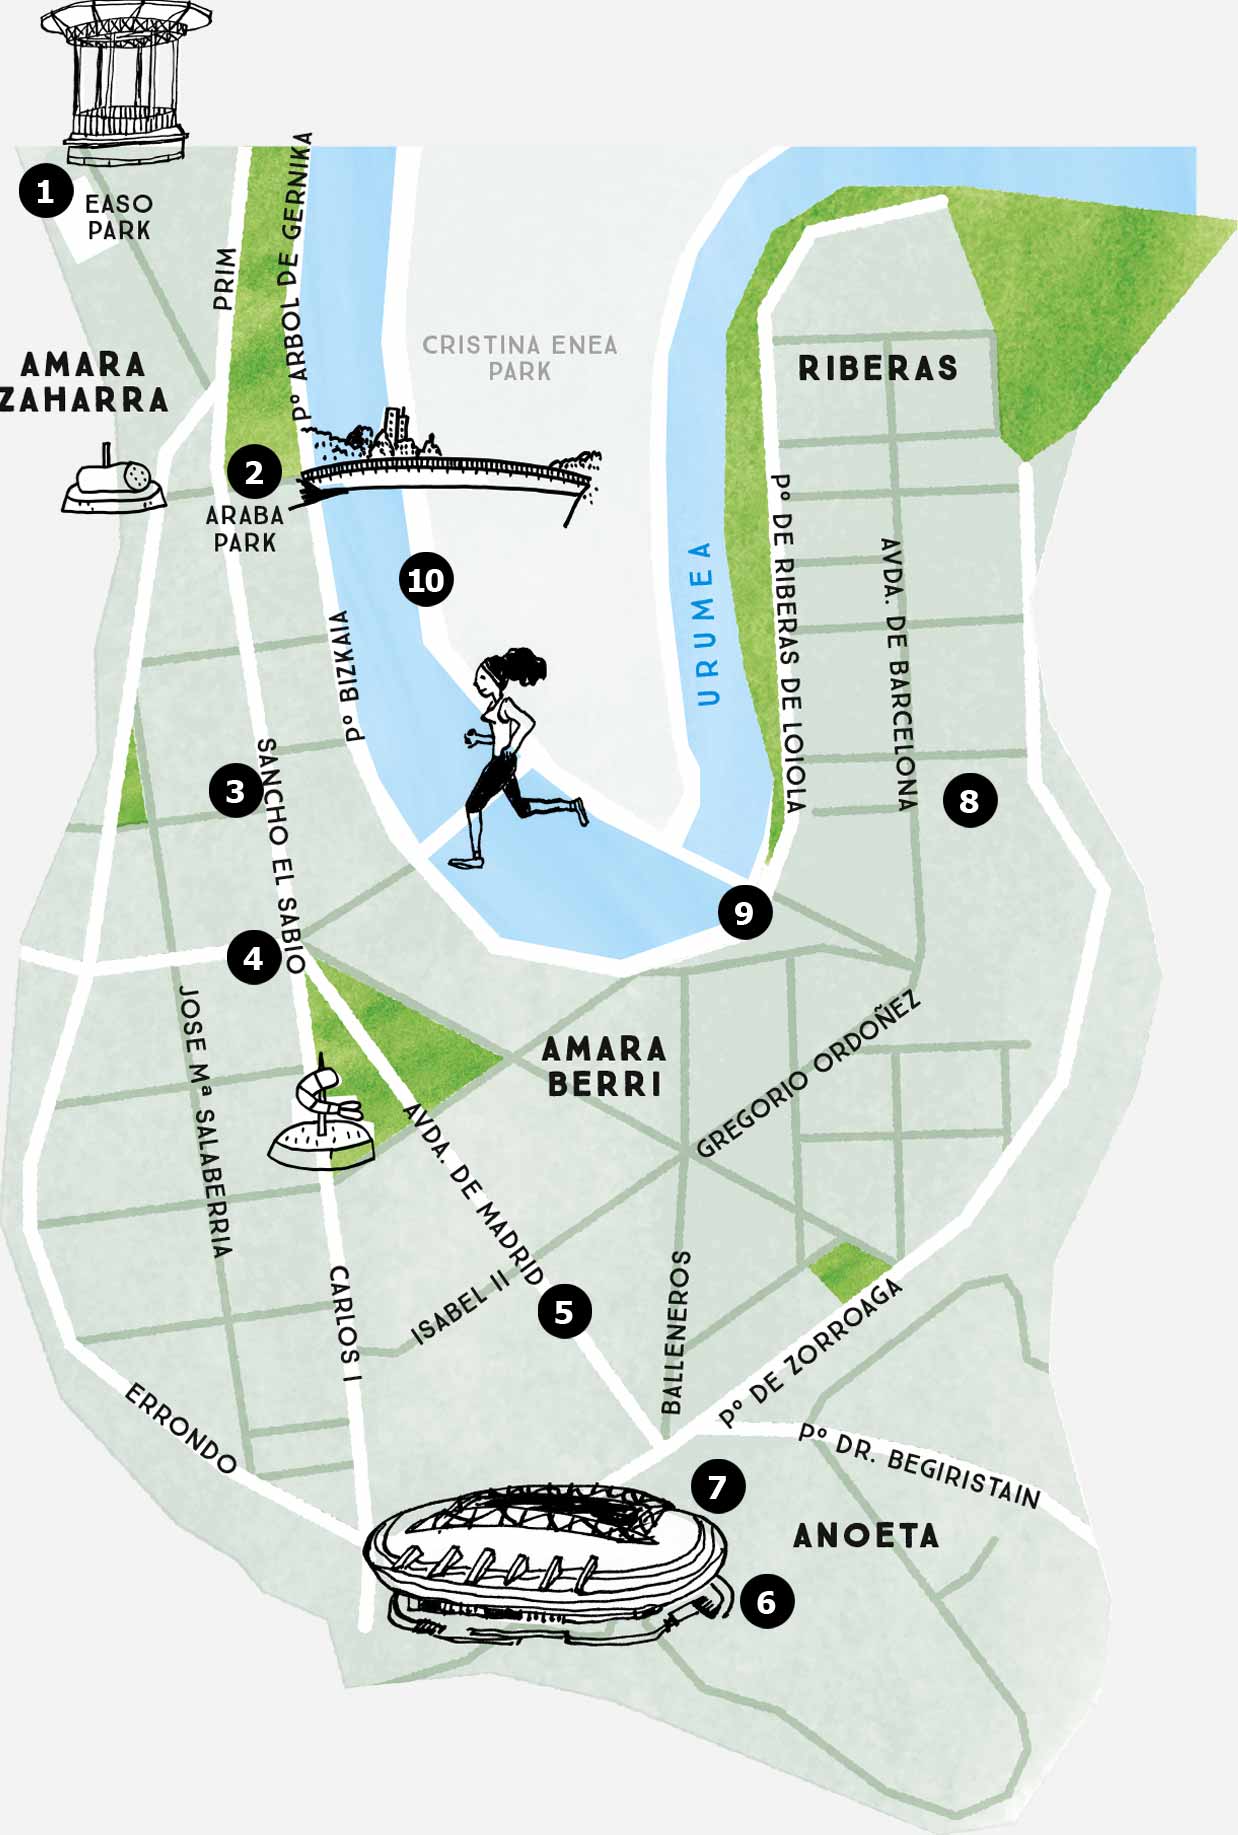 Amara neighbourhood map